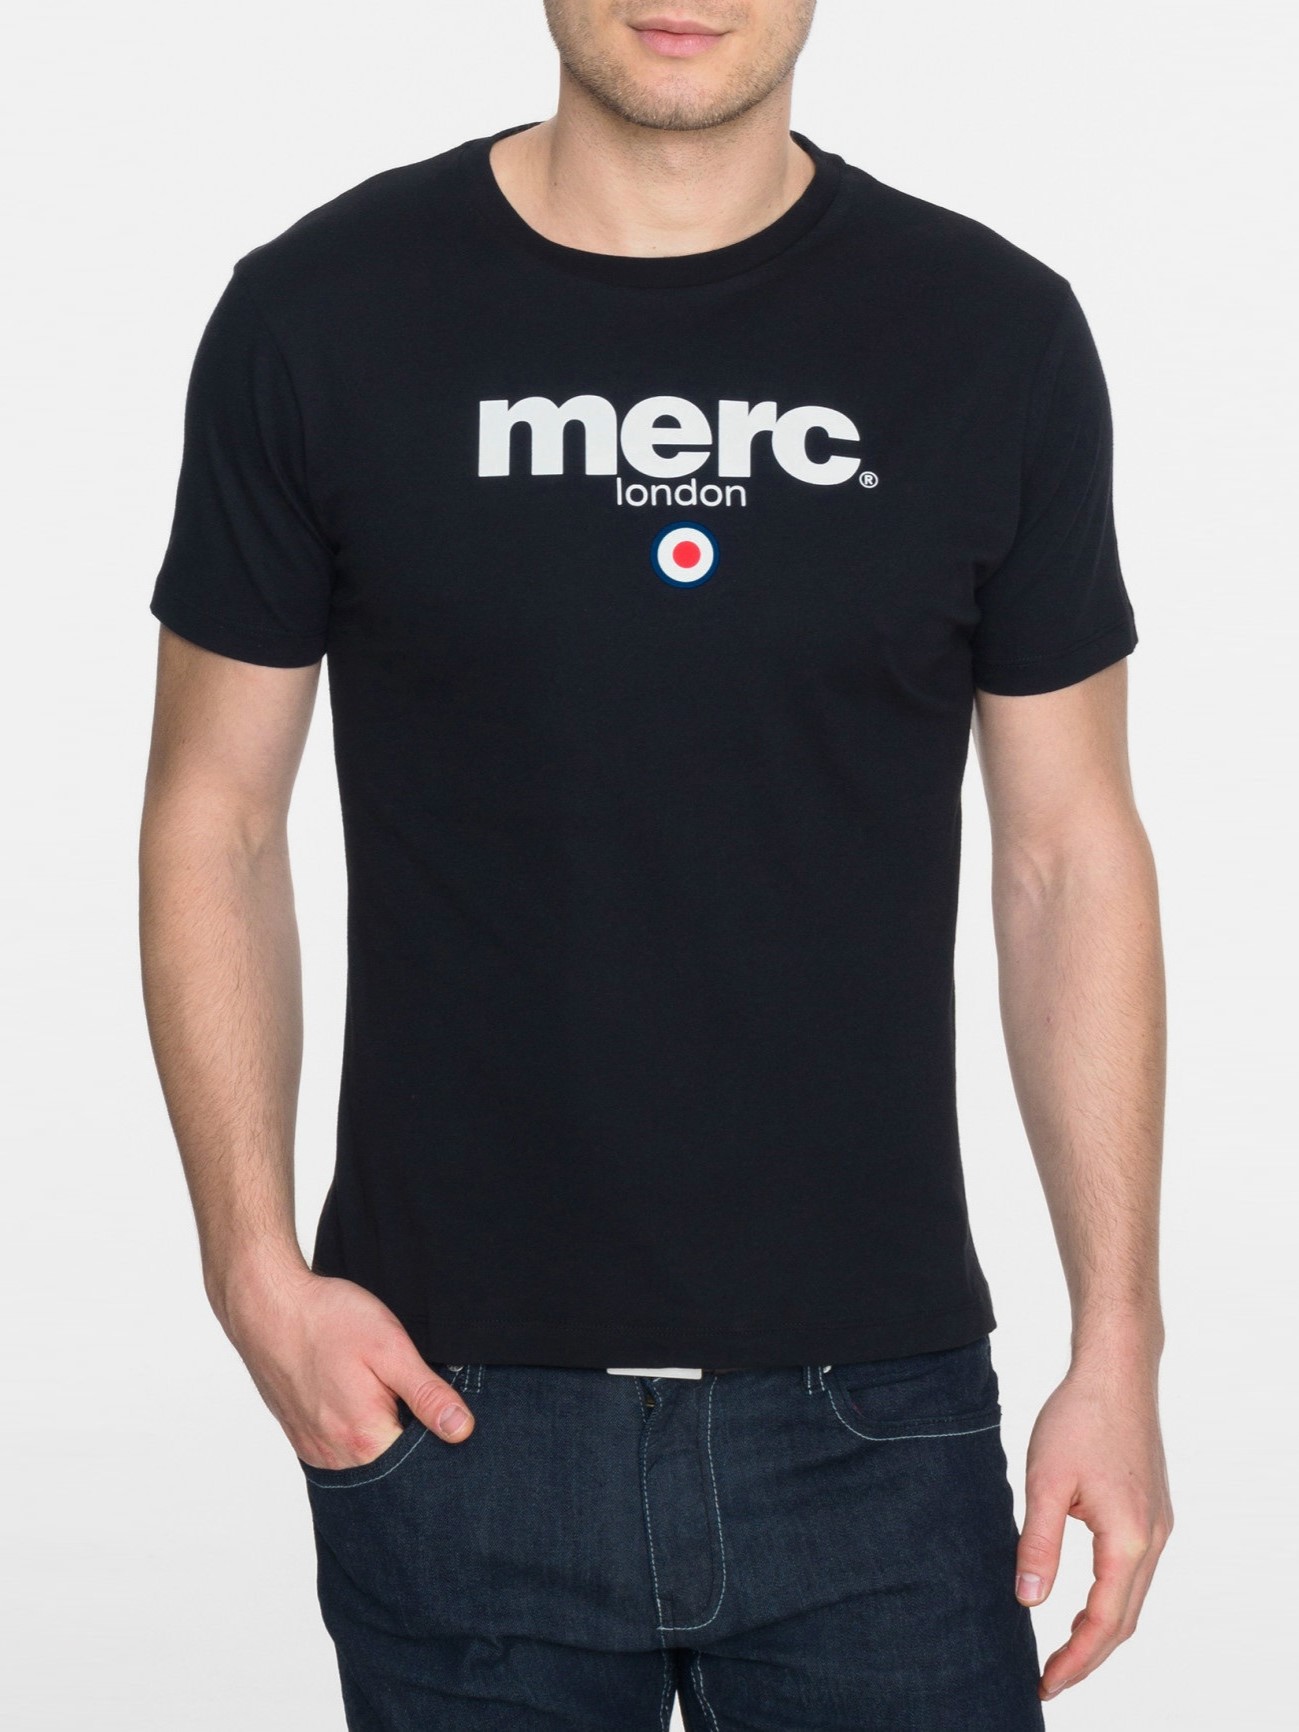 Мужская футболка Merc Brighton c классическим логотипом, черная (black)